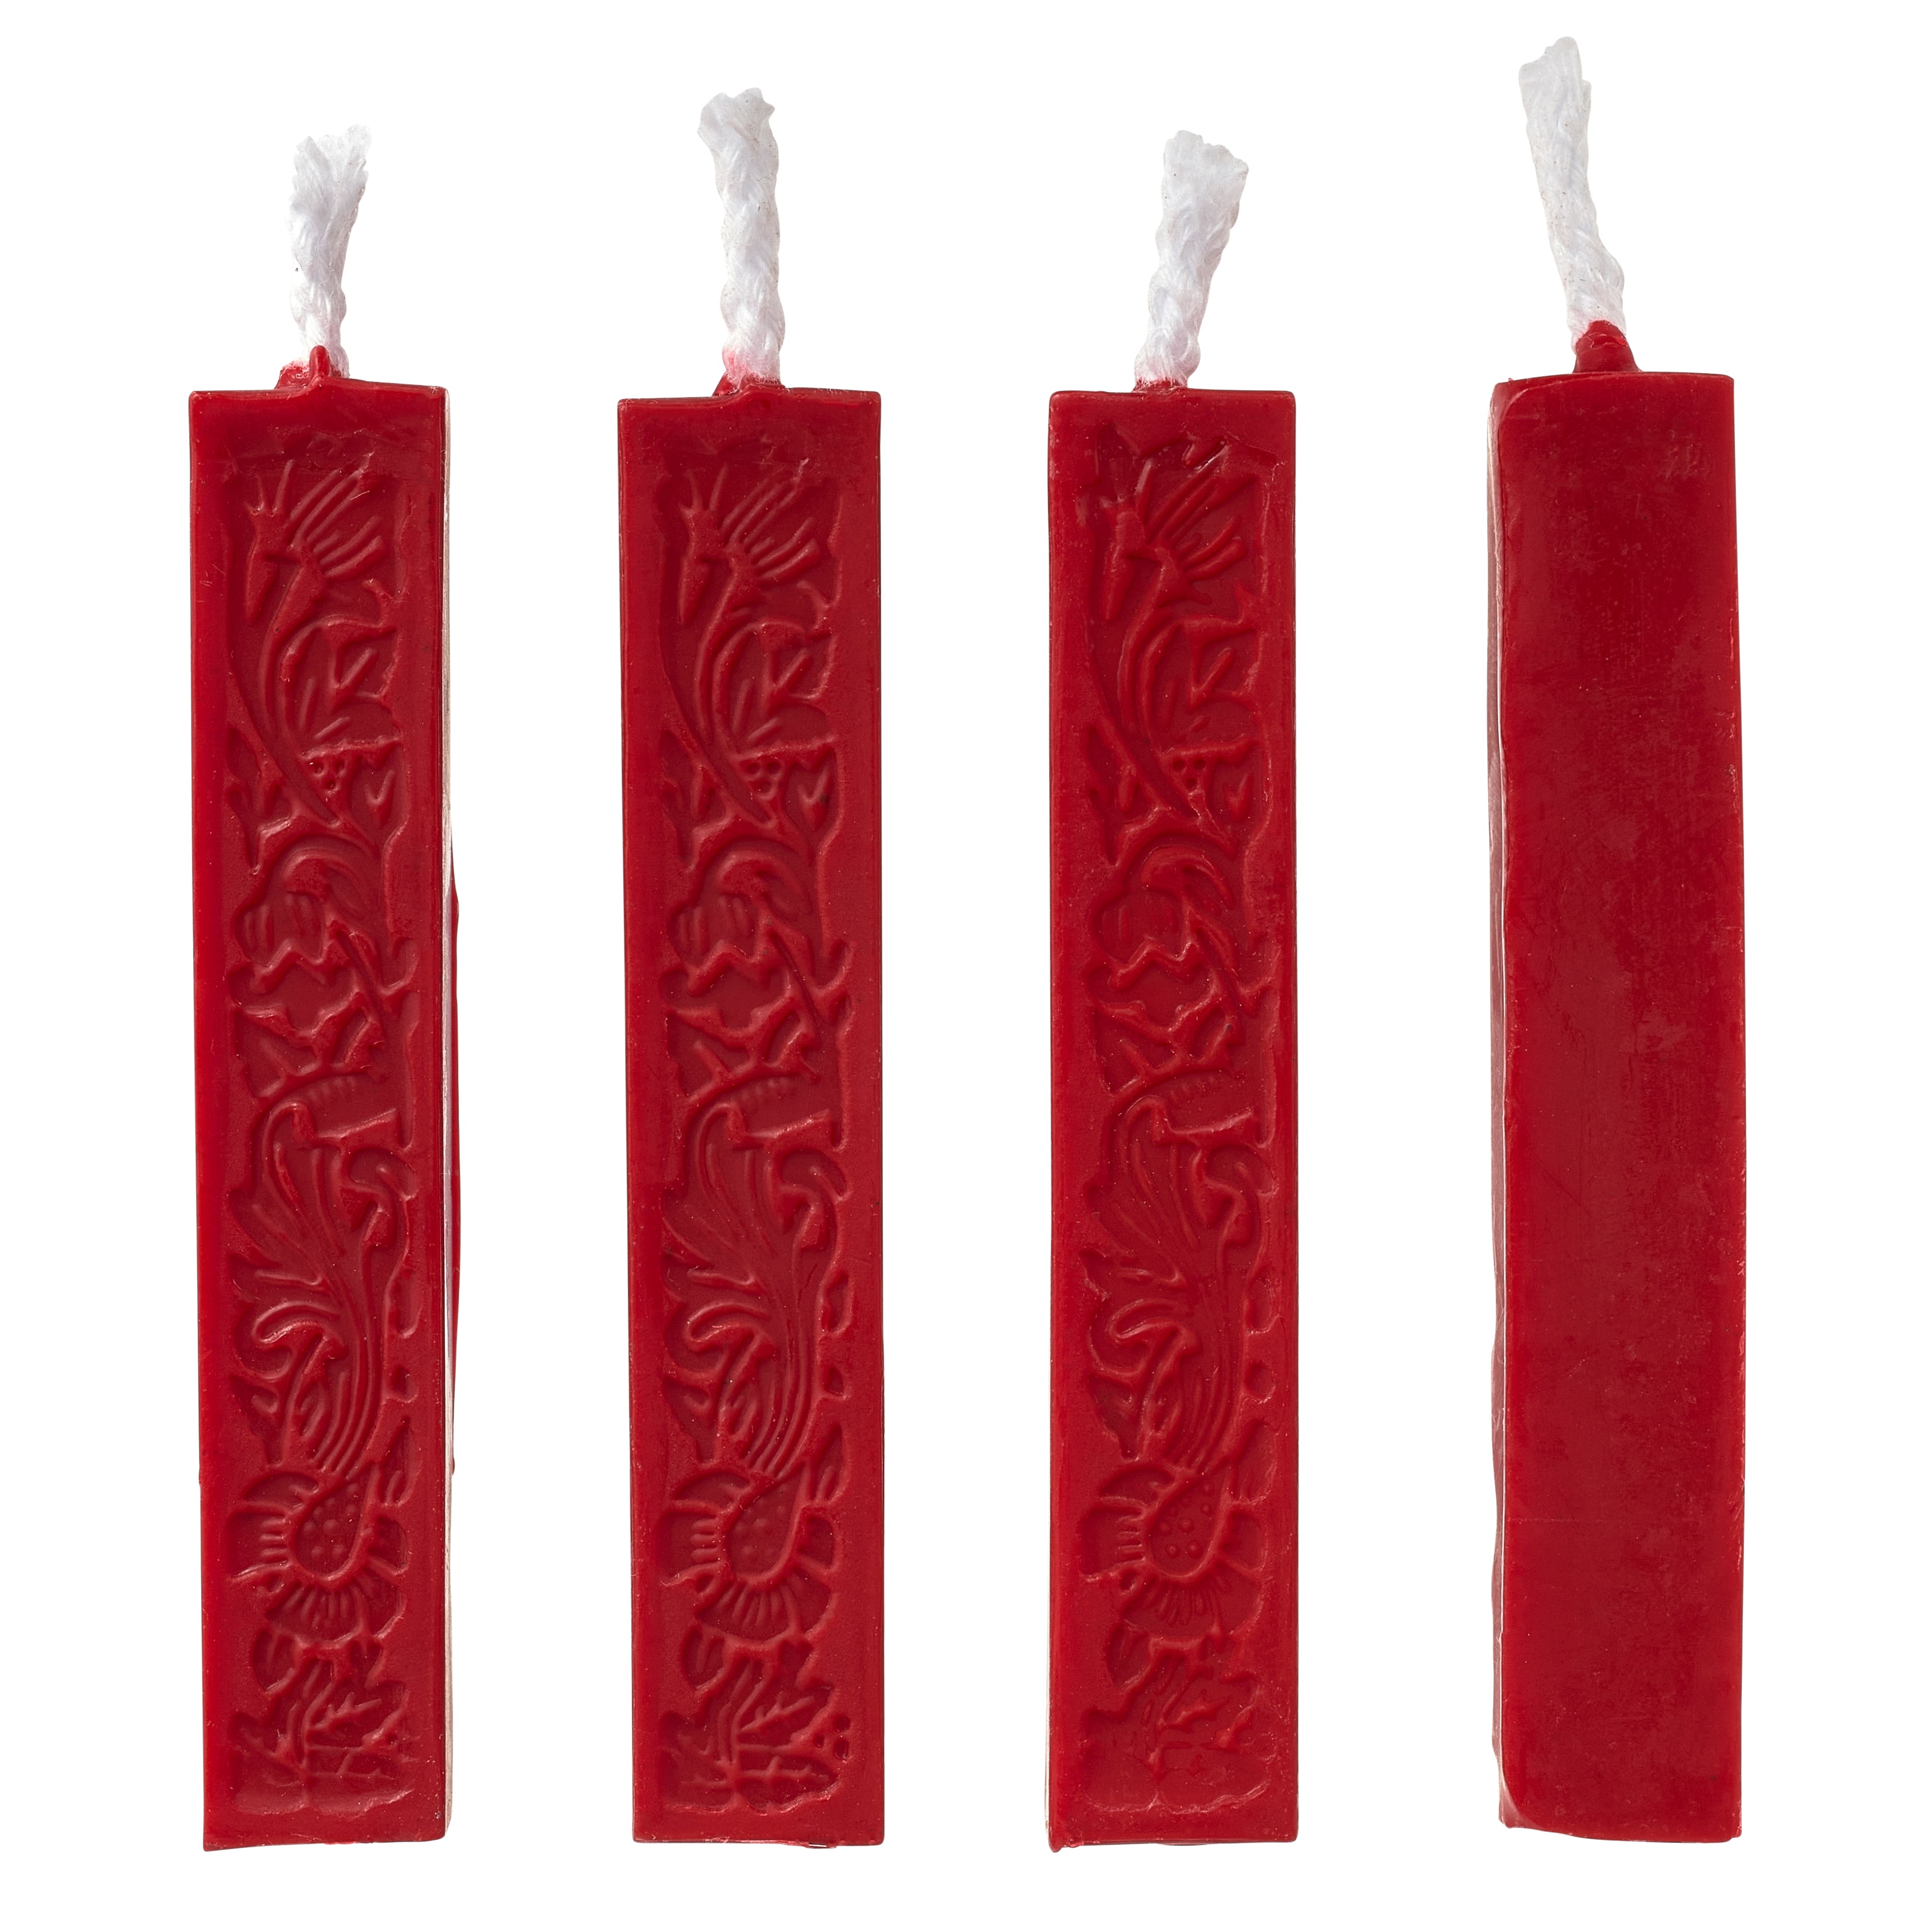  Red Sealing Wax Sticks STAMPMASTER 20pcs Wax Seal